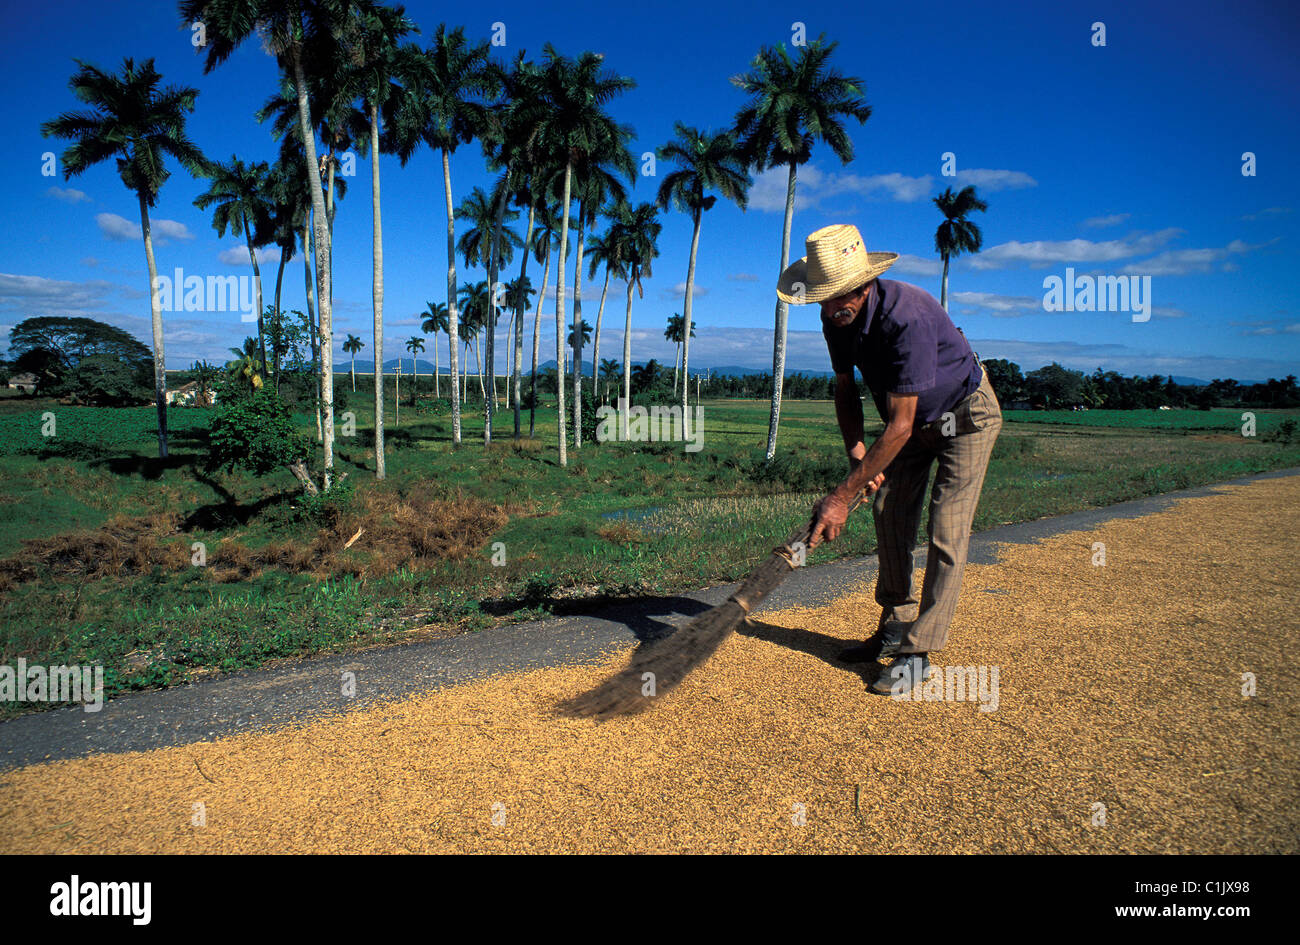 Cuba, Pinar del Río, zona de secado de arroz en la carretera Foto de stock